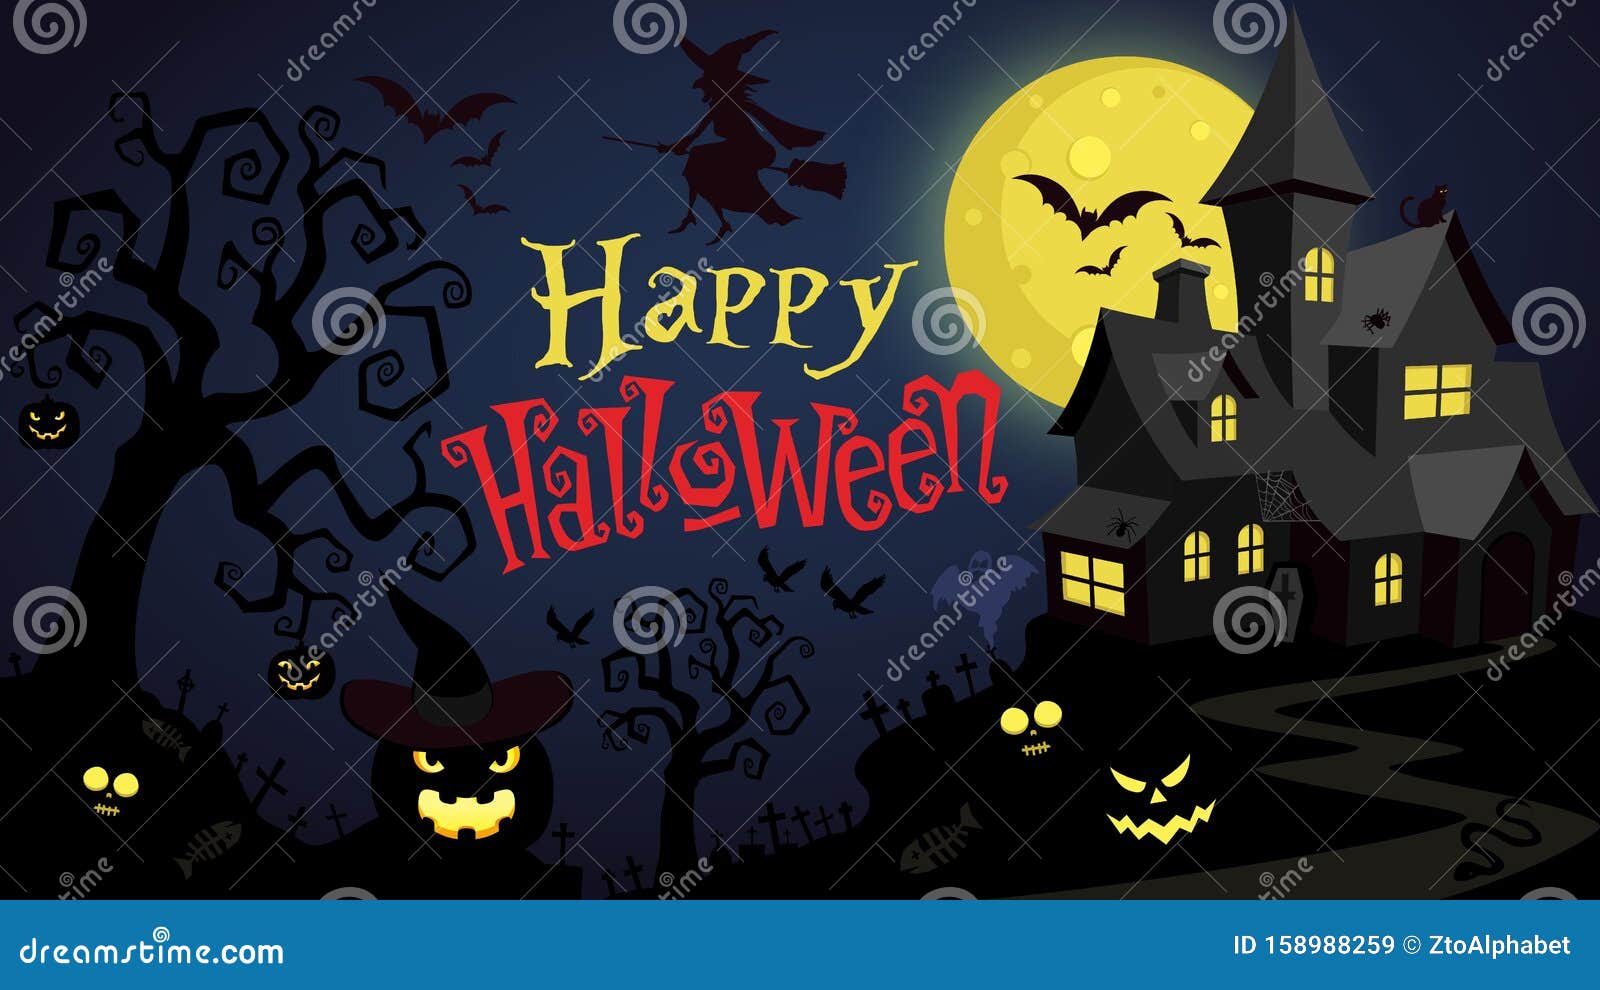 Happy Halloween Wallpaper 4K Halloween Pumpkin CelebrationsHalloween  8882